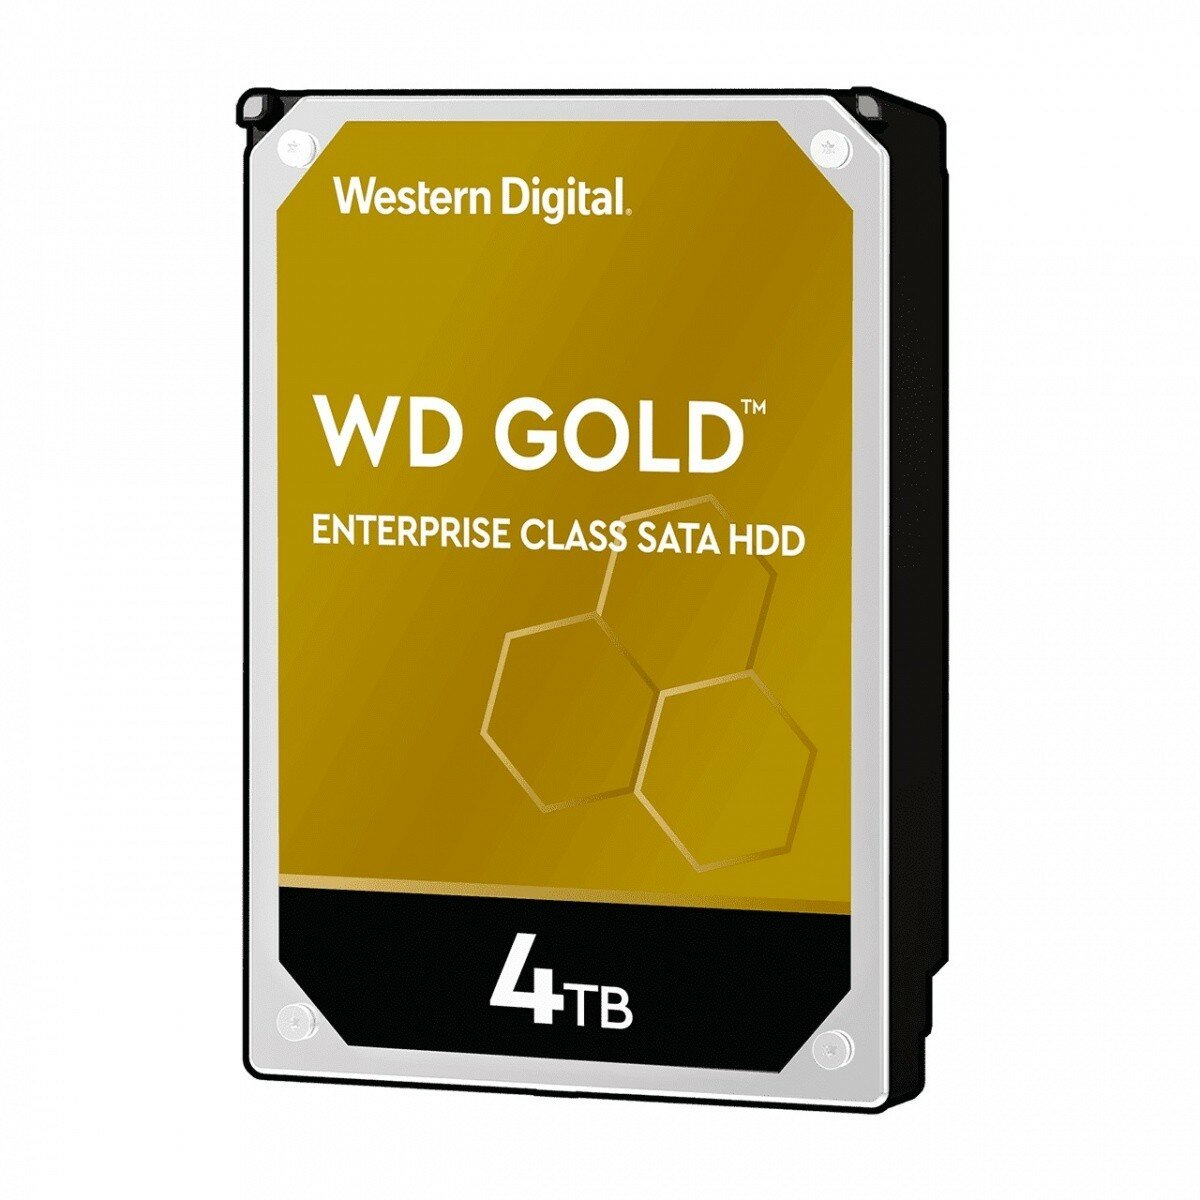 Dysk HDD Western Digital Gold Enterprise WD4003FRYZ 4TB 3,5 256MB SATAIII/7200rpm widok na przód dysku od prawej strony